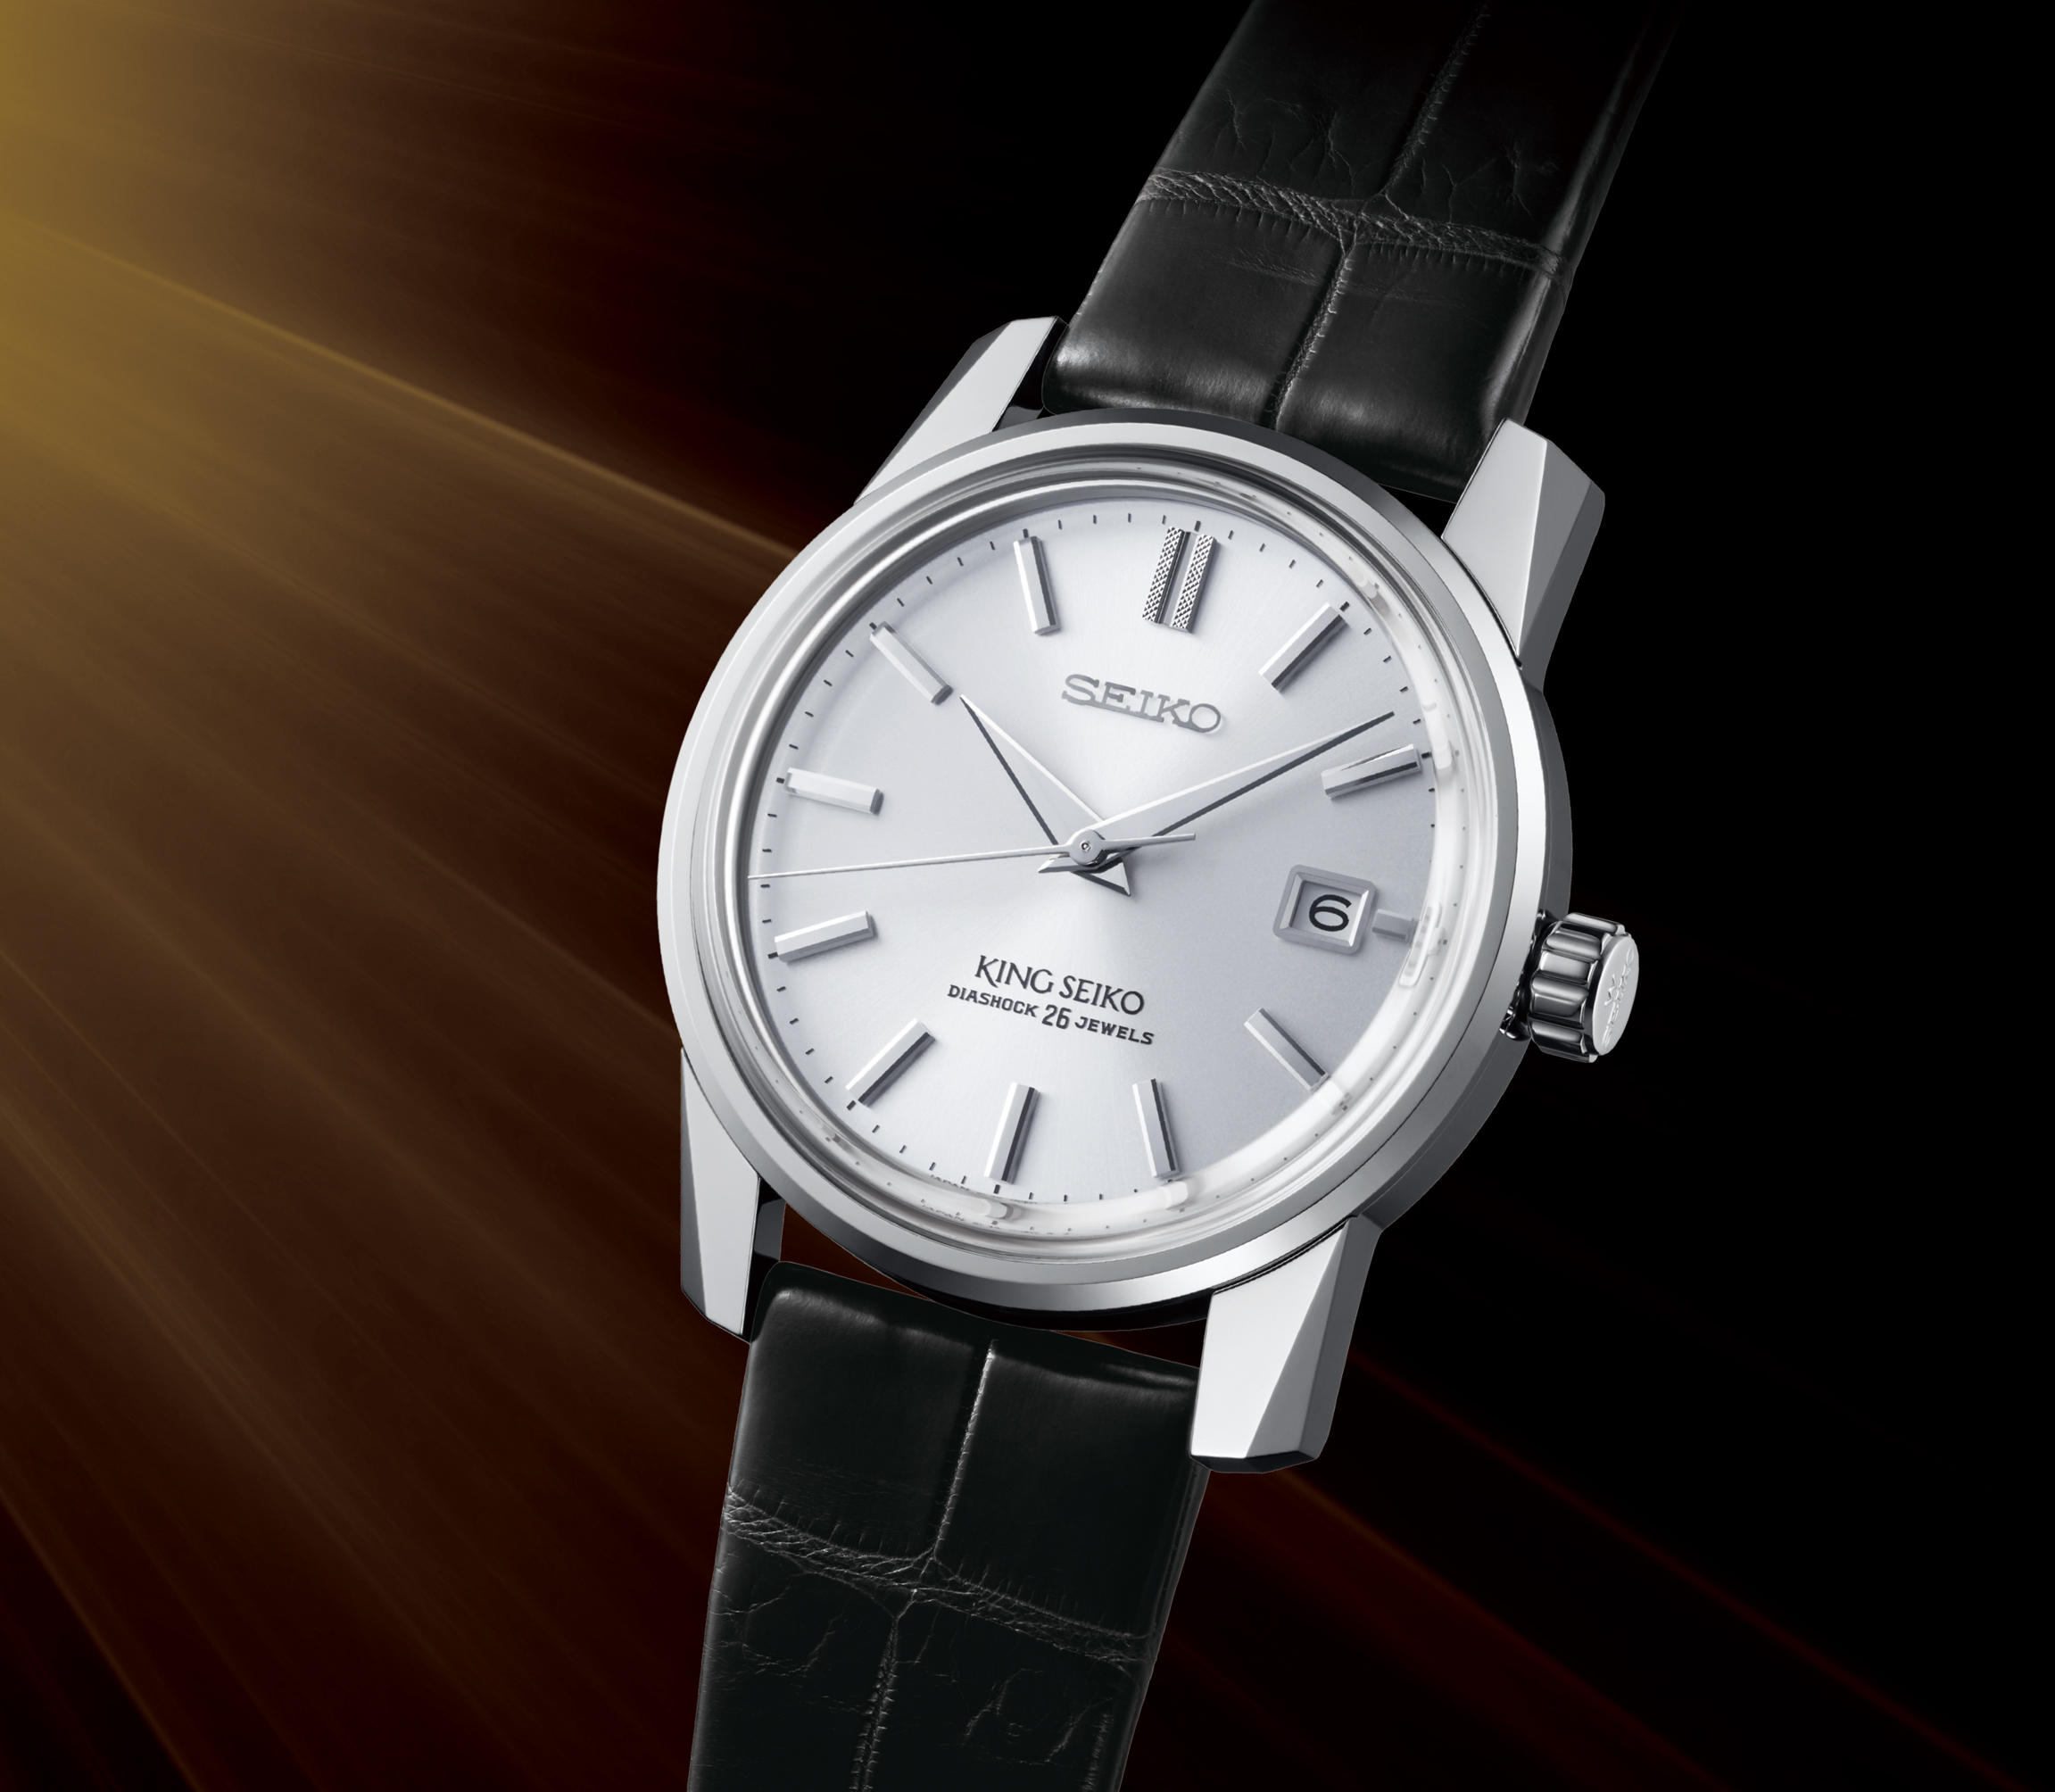 キングセイコー Sdka001 King Seiko ブランド腕時計の正規販売店紹介サイトgressive グレッシブ